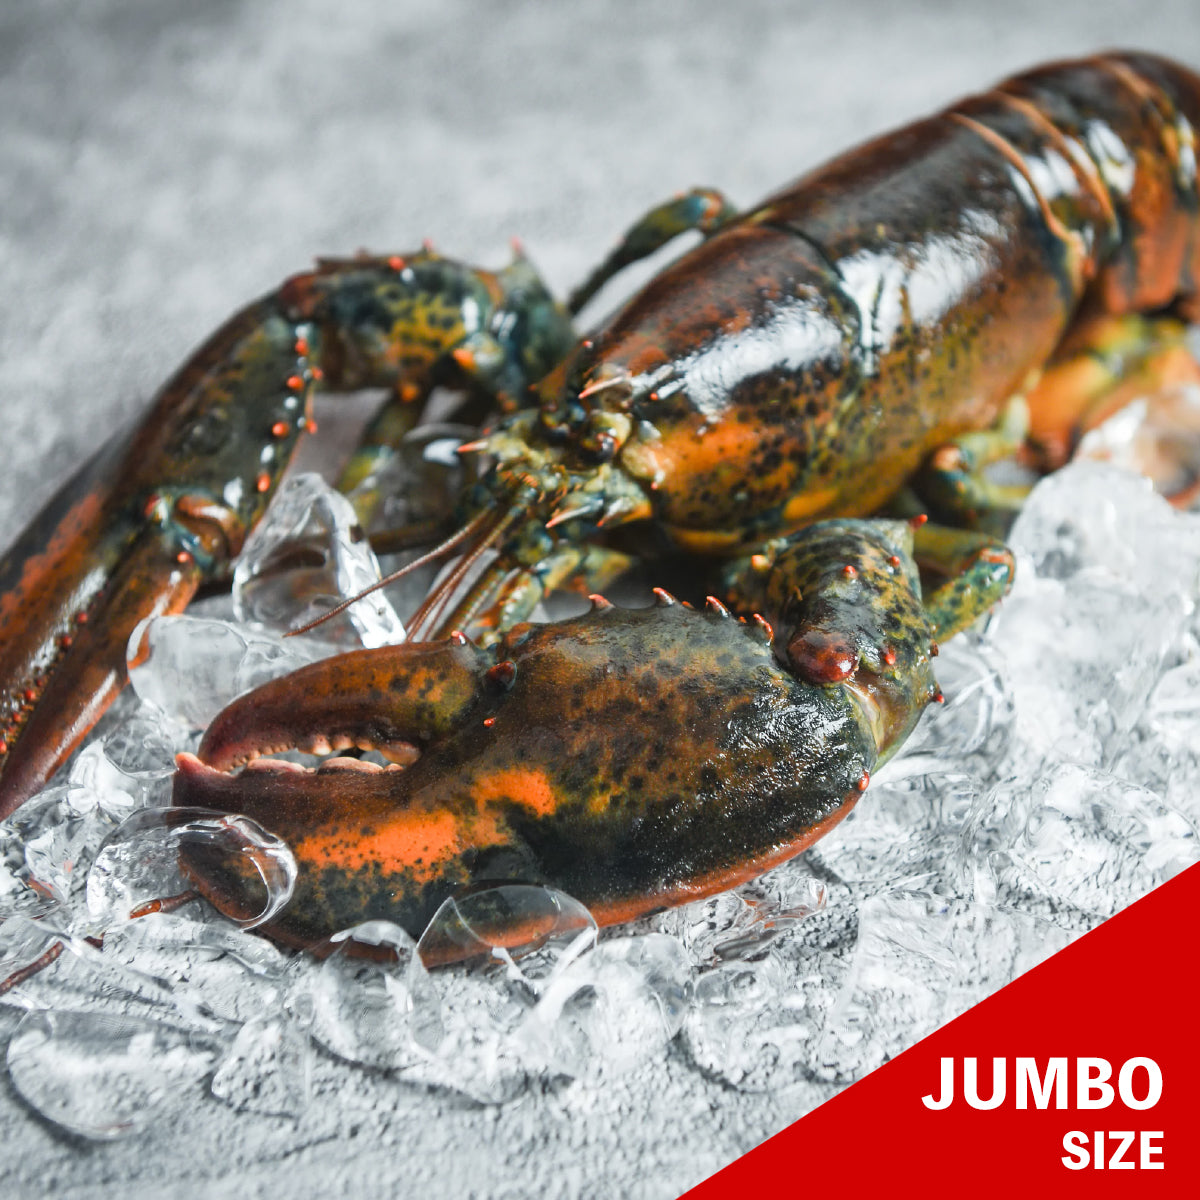 Jumbo Live Homard Lobster